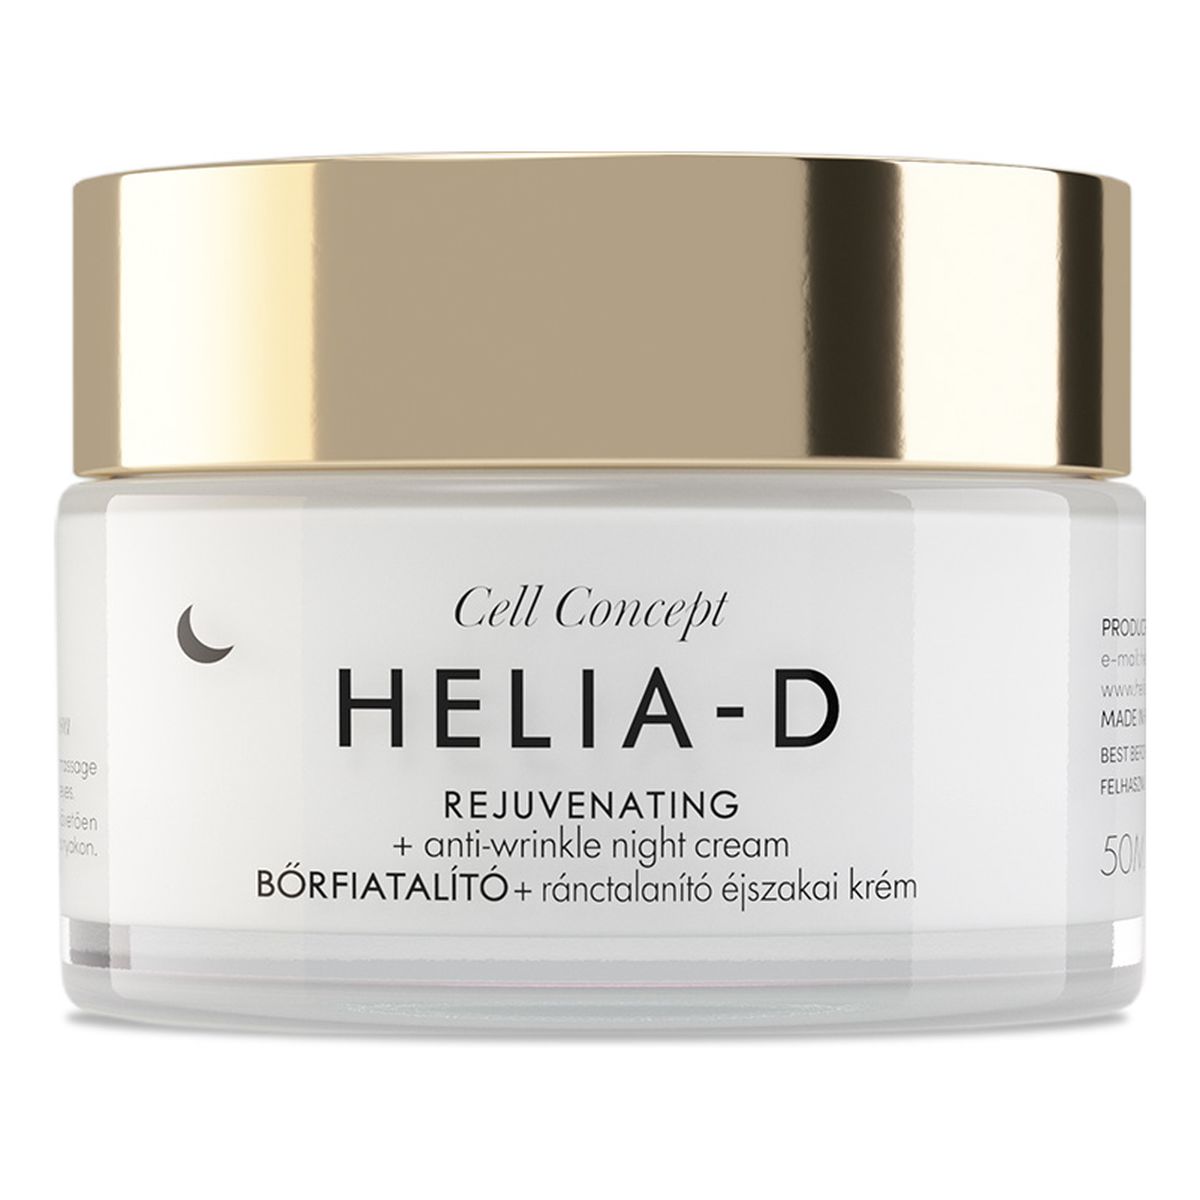 Helia-D Cell Concept Rejuvenating + Anti-wrinkle Night Cream 65+ przeciwzmarszczkowy Krem na noc 50ml